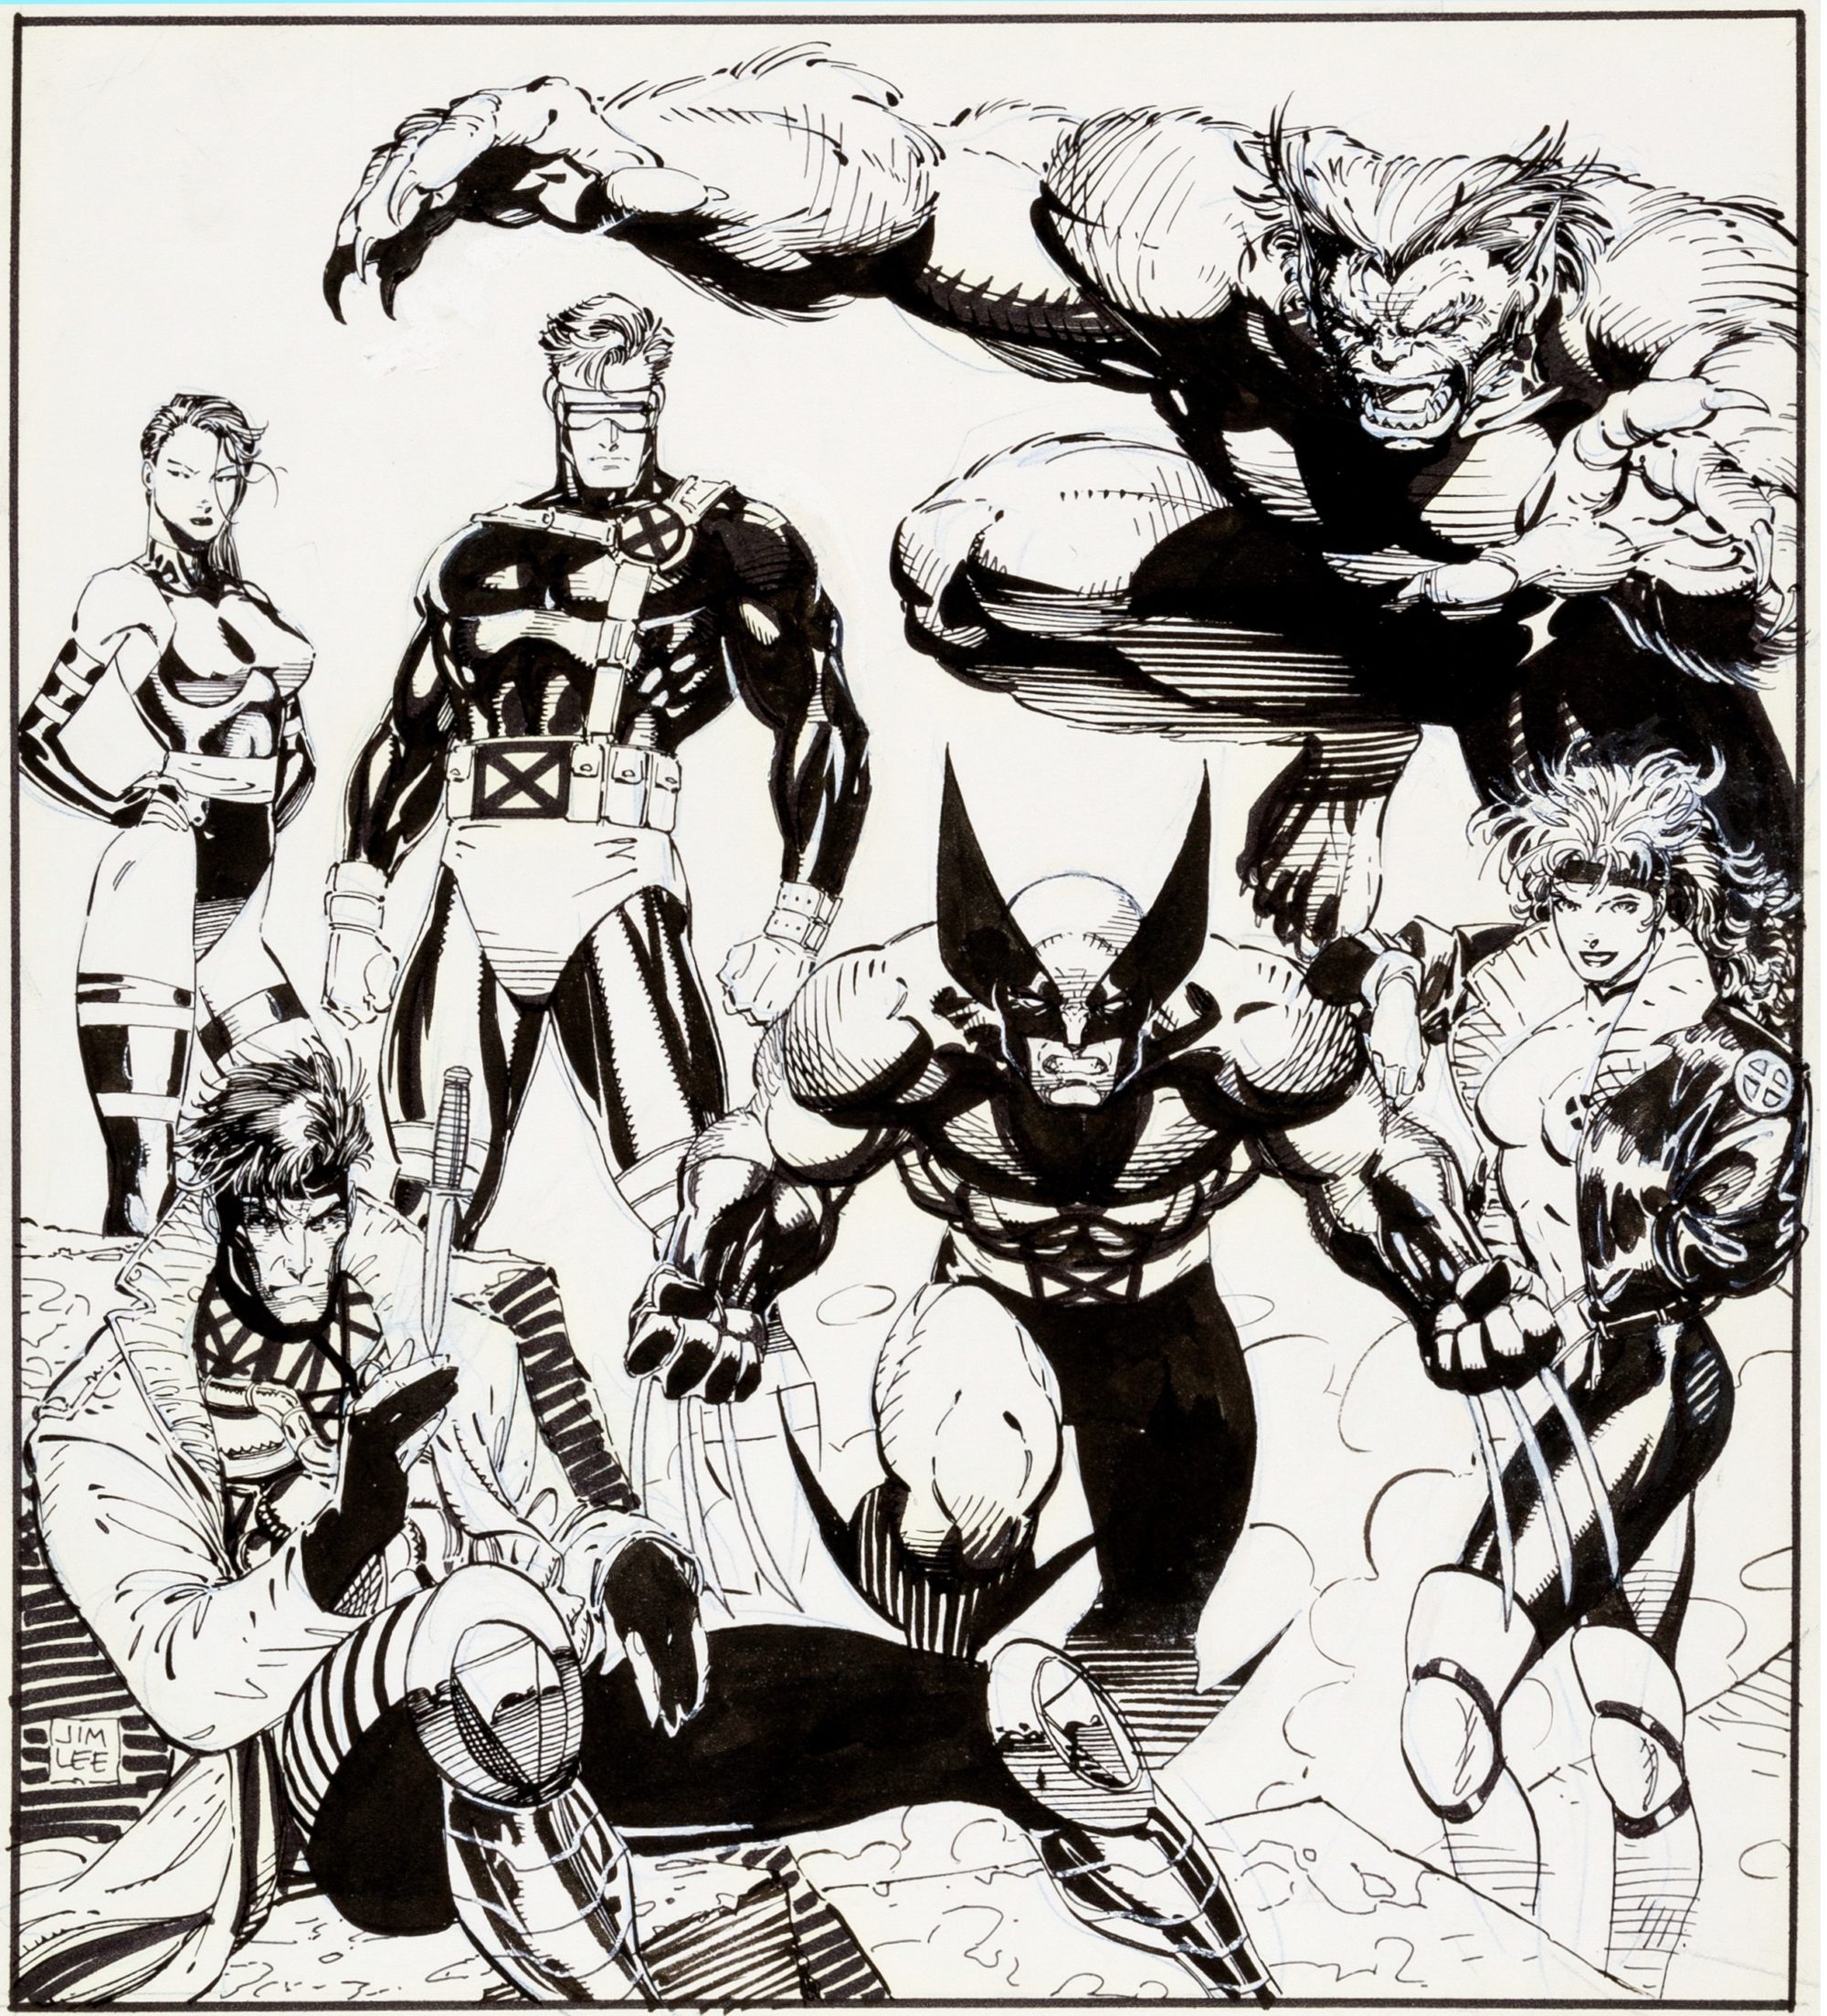 Jim Lee X-Men drawing